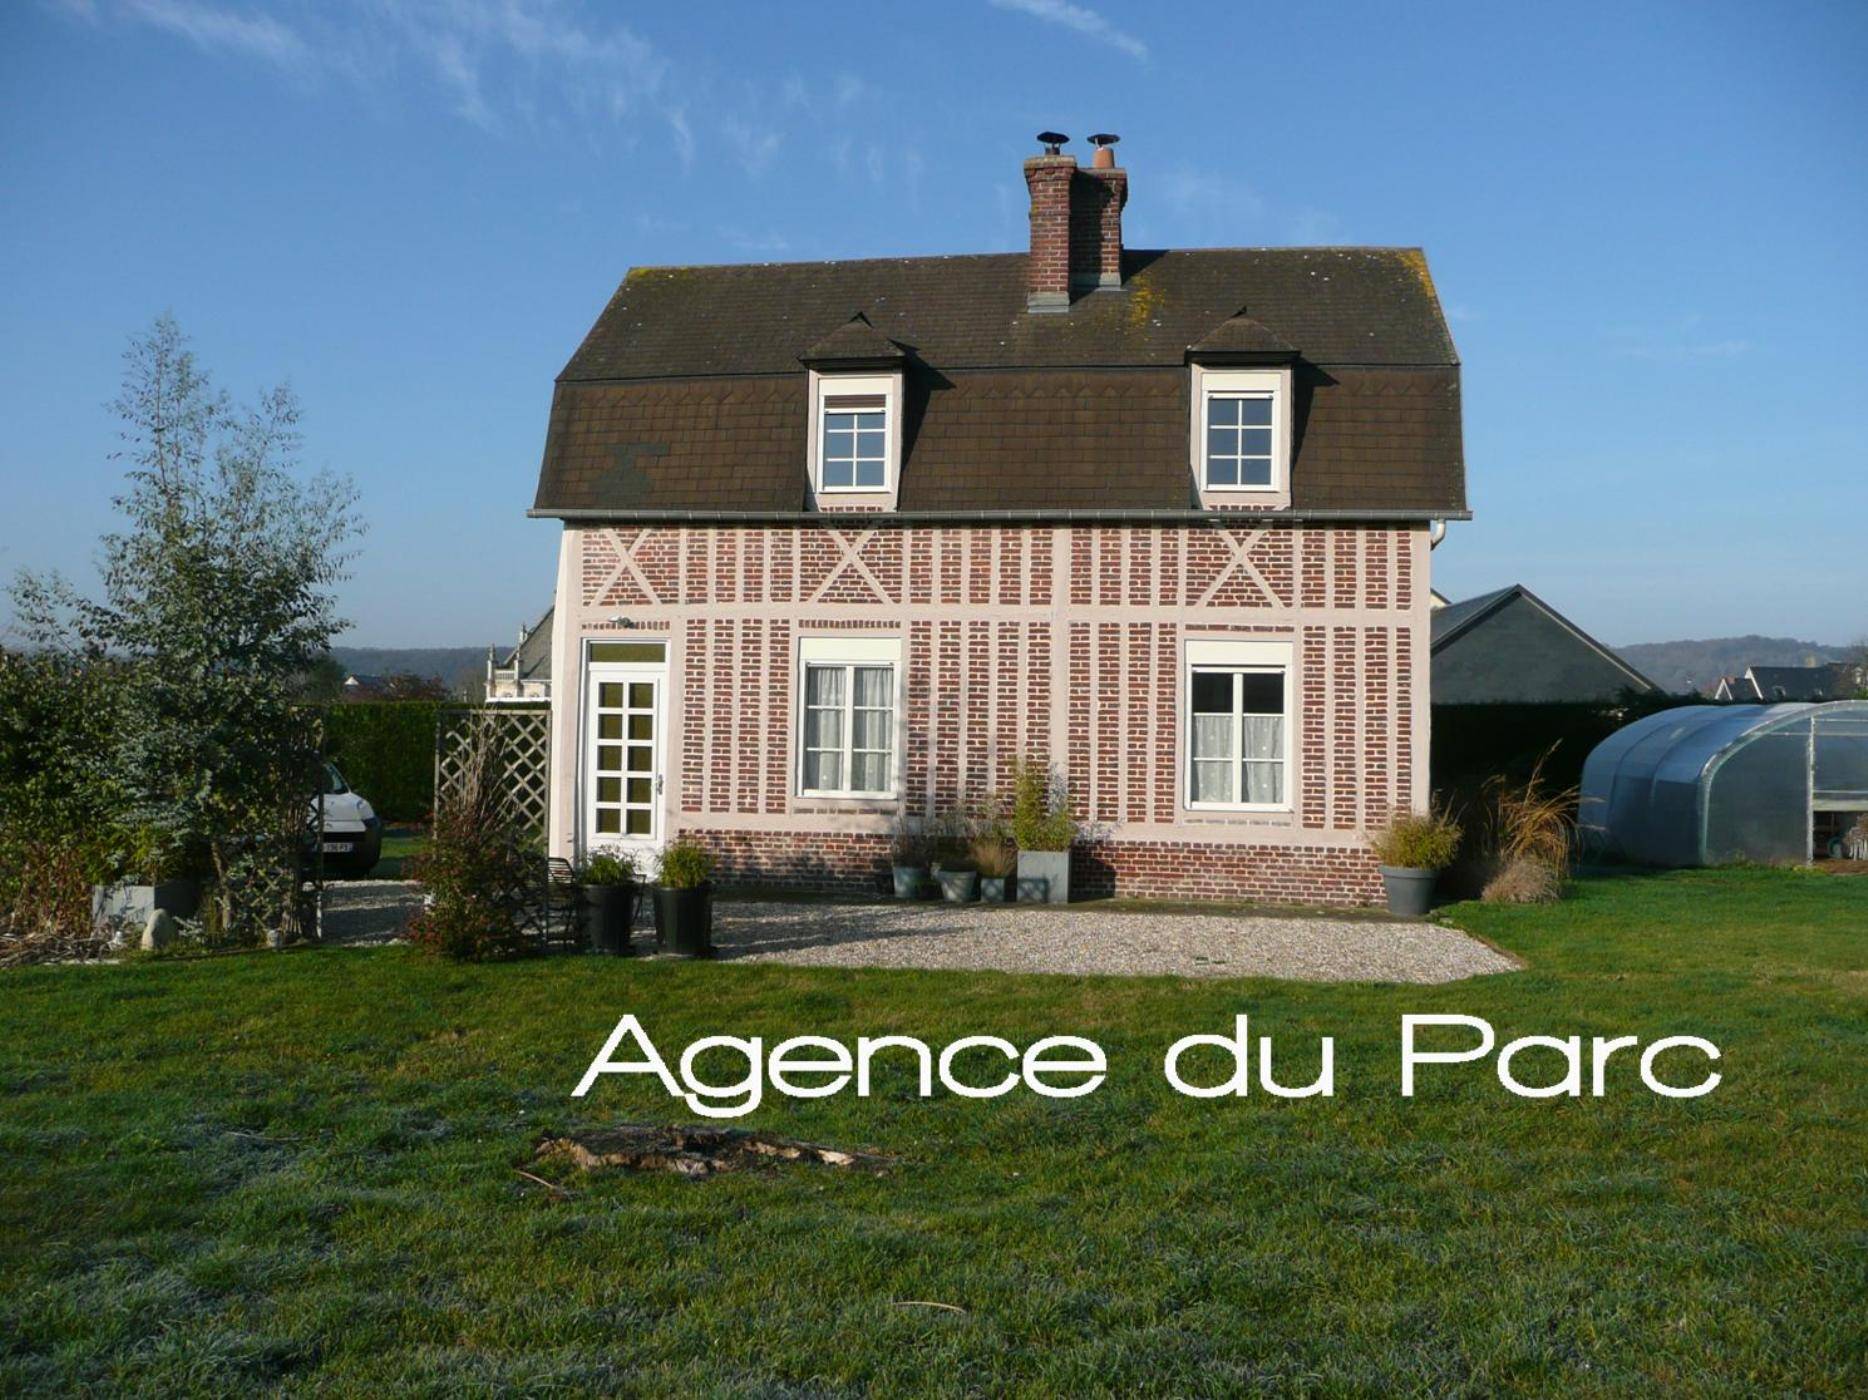 Maison de caractère rénovée à vendre, proche de la Forêt de Brotonne, en Normandie, axe Caudebec/ Bourg Achard